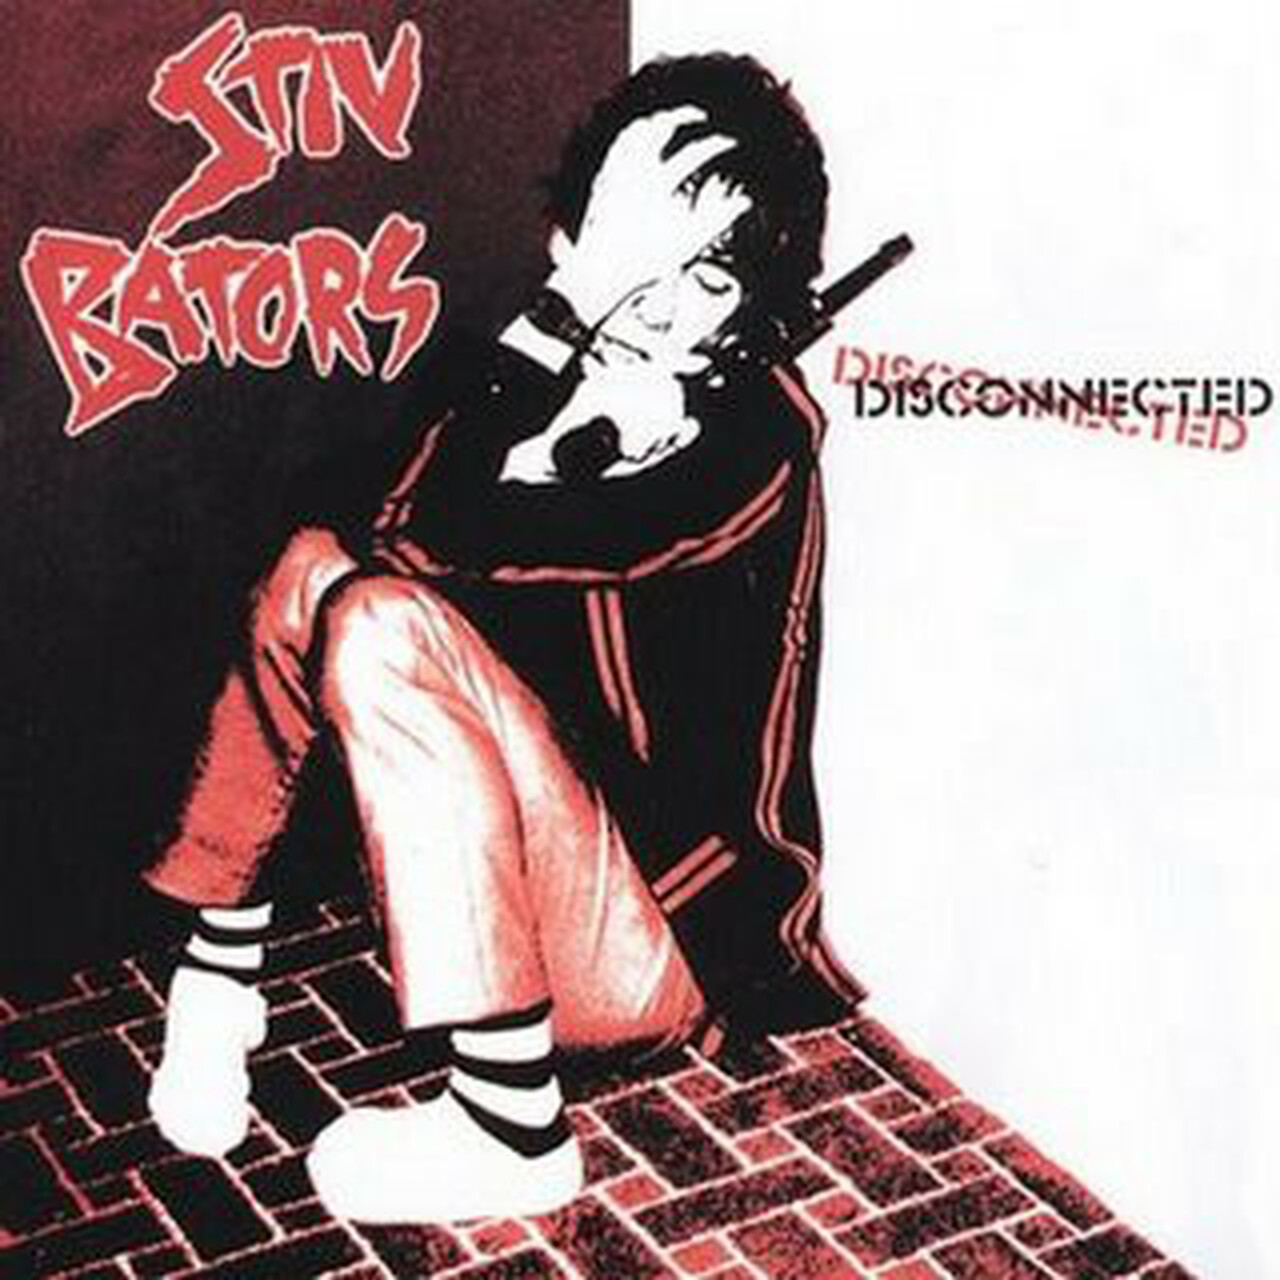 Stiv Bators - Disconnected - LP